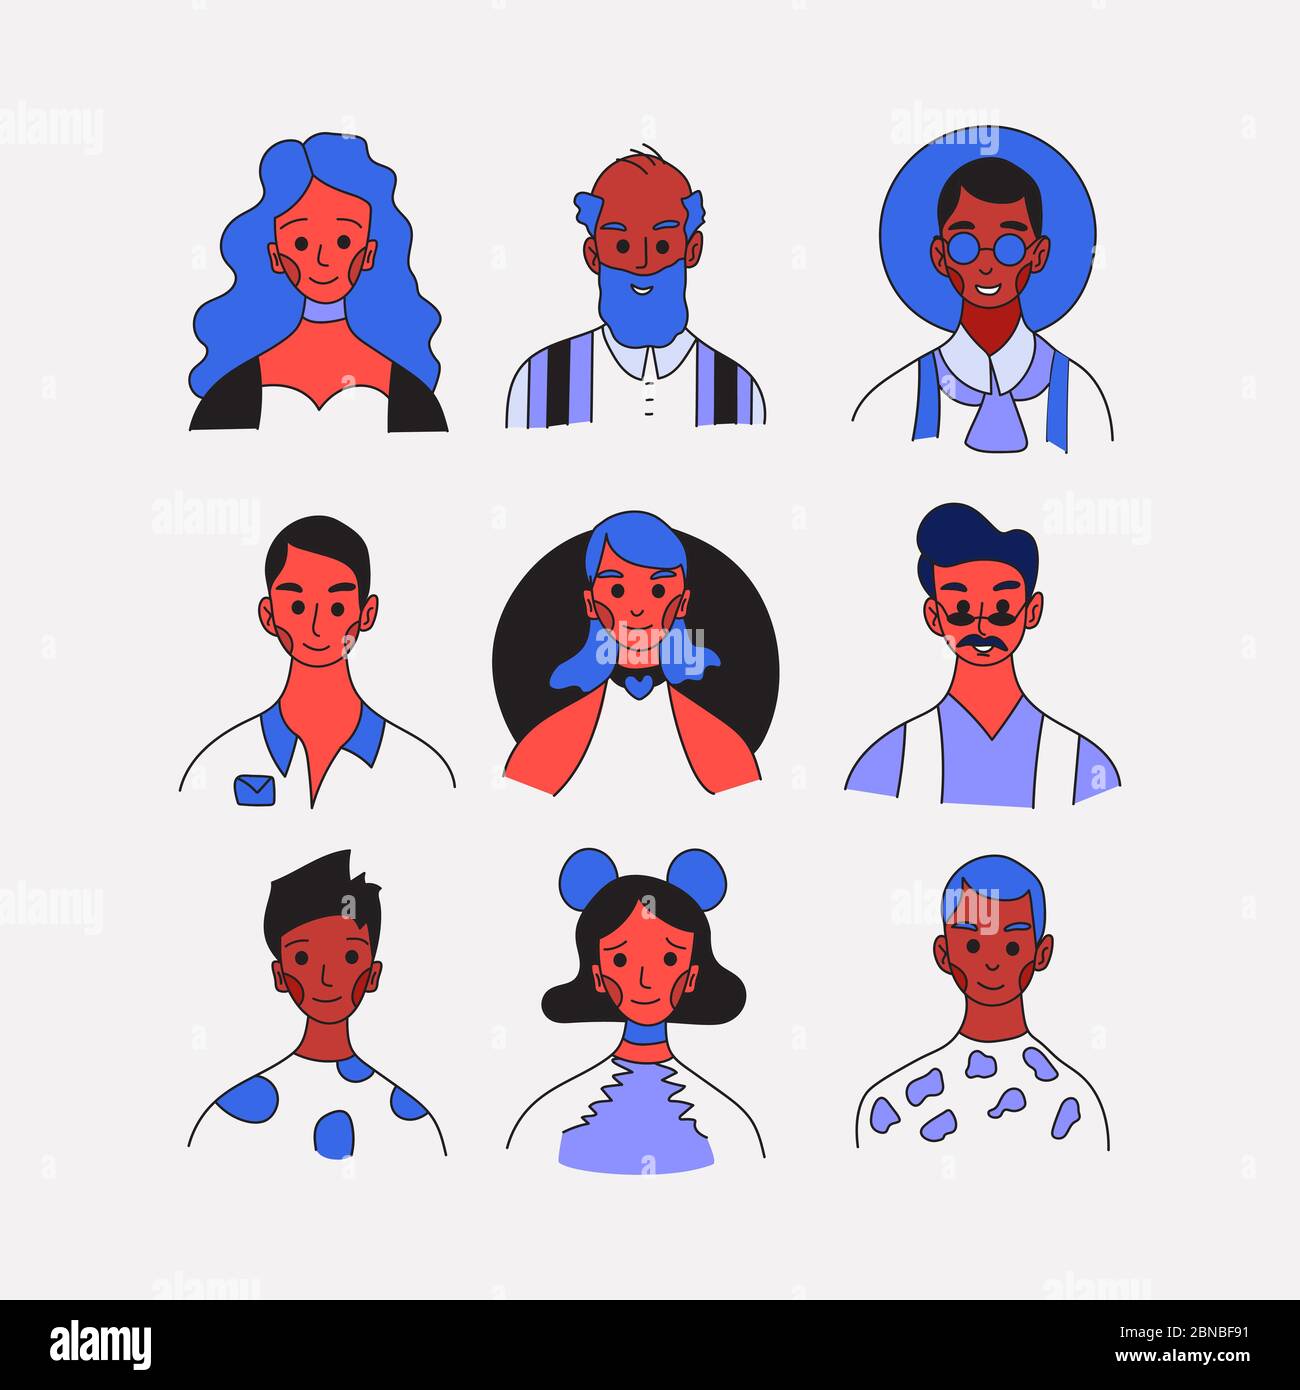 Personen mit unterschiedlichen Berufs Profil Avatare Sammlung. Icons von weiblichen und männlichen Gesichtern Icon Vektor-Illustration gesetzt. Moderne Cartoon flache Design. Ein Stock Vektor